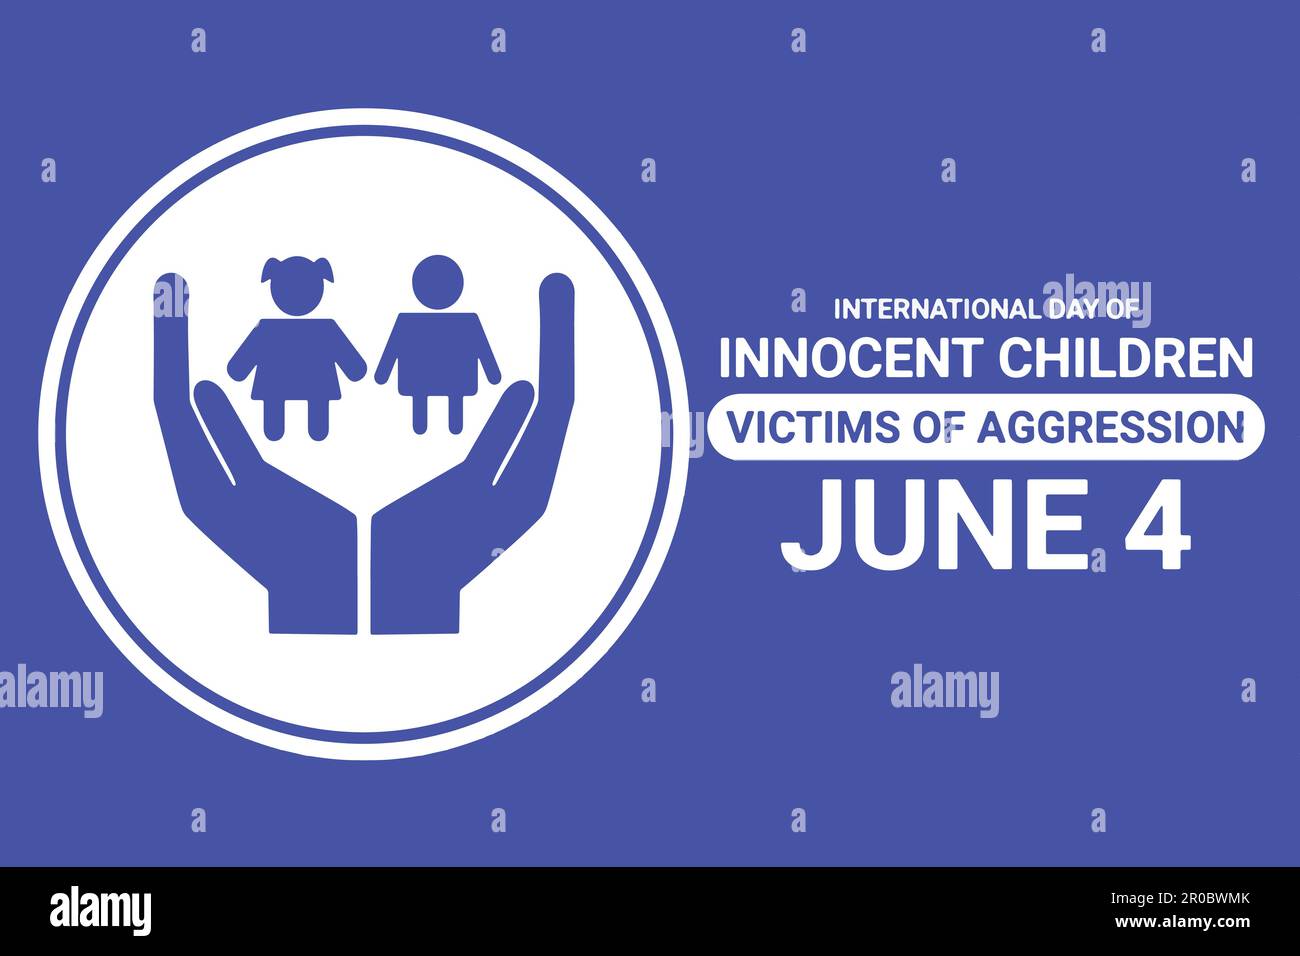 Journée internationale des enfants innocents victimes d'agression. 4 juin. Concept de vacances. Modèle pour arrière-plan, bannière, carte, affiche Illustration de Vecteur